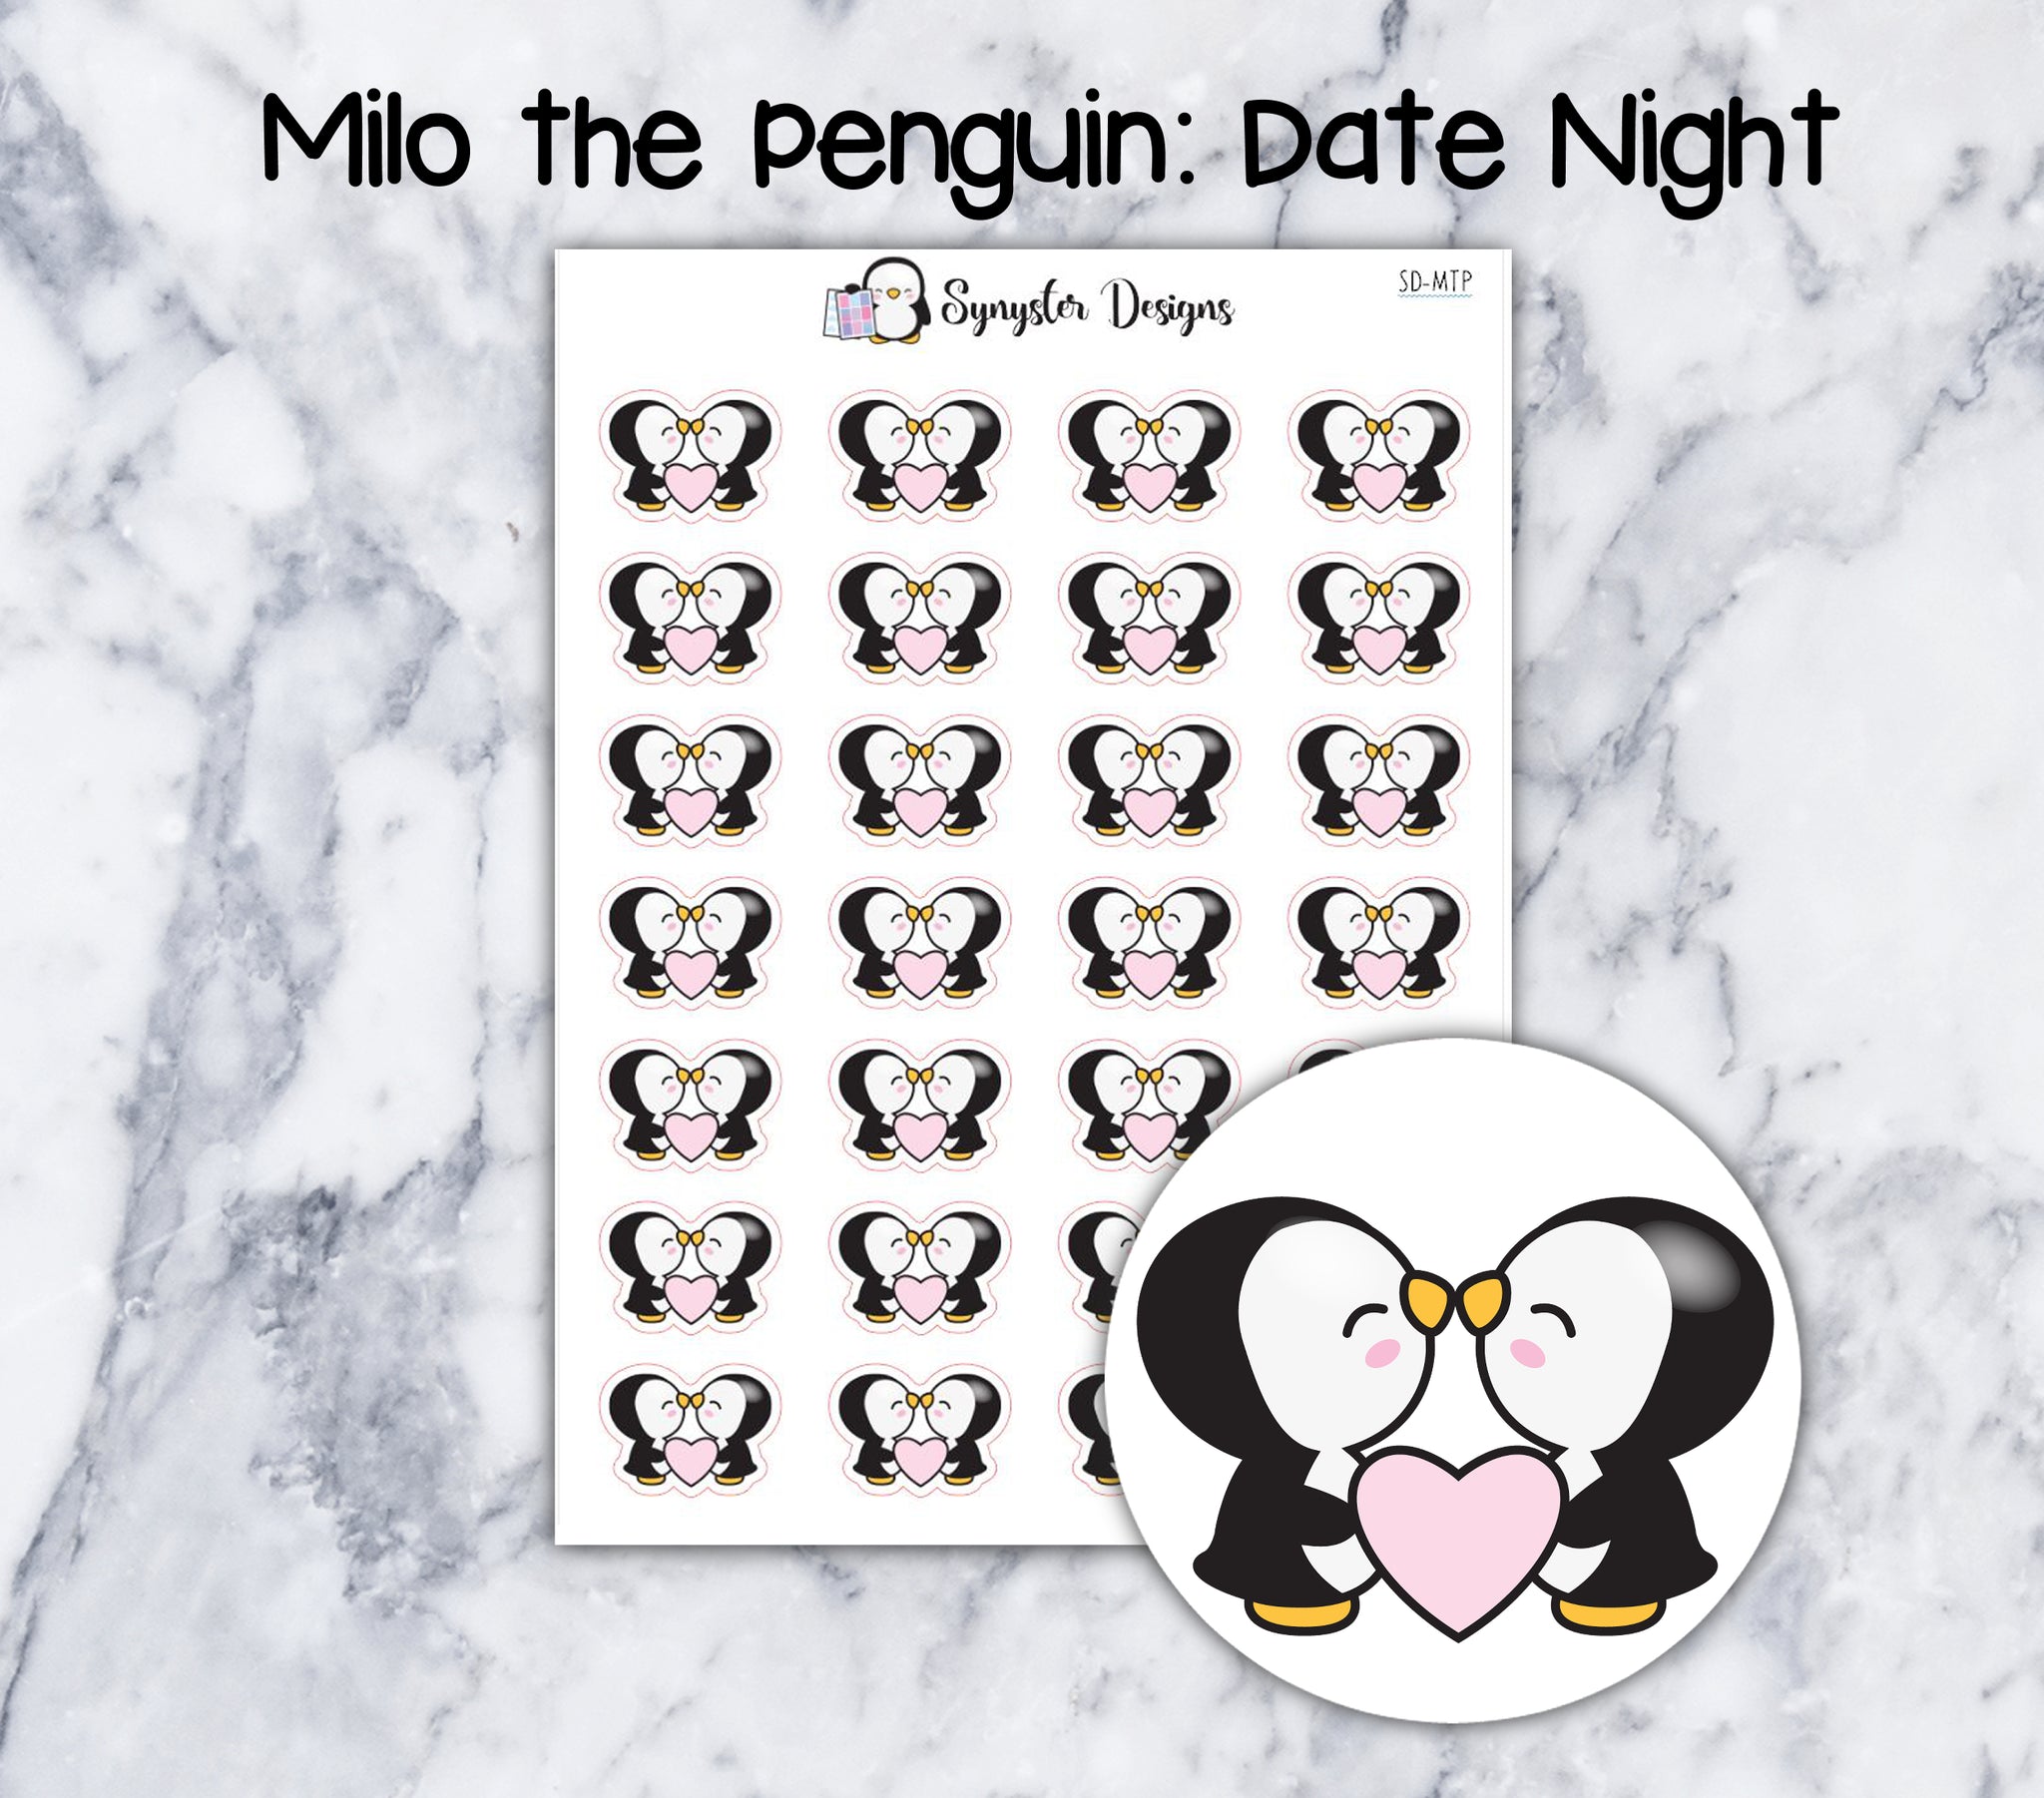 Date Night Milo the Penguin